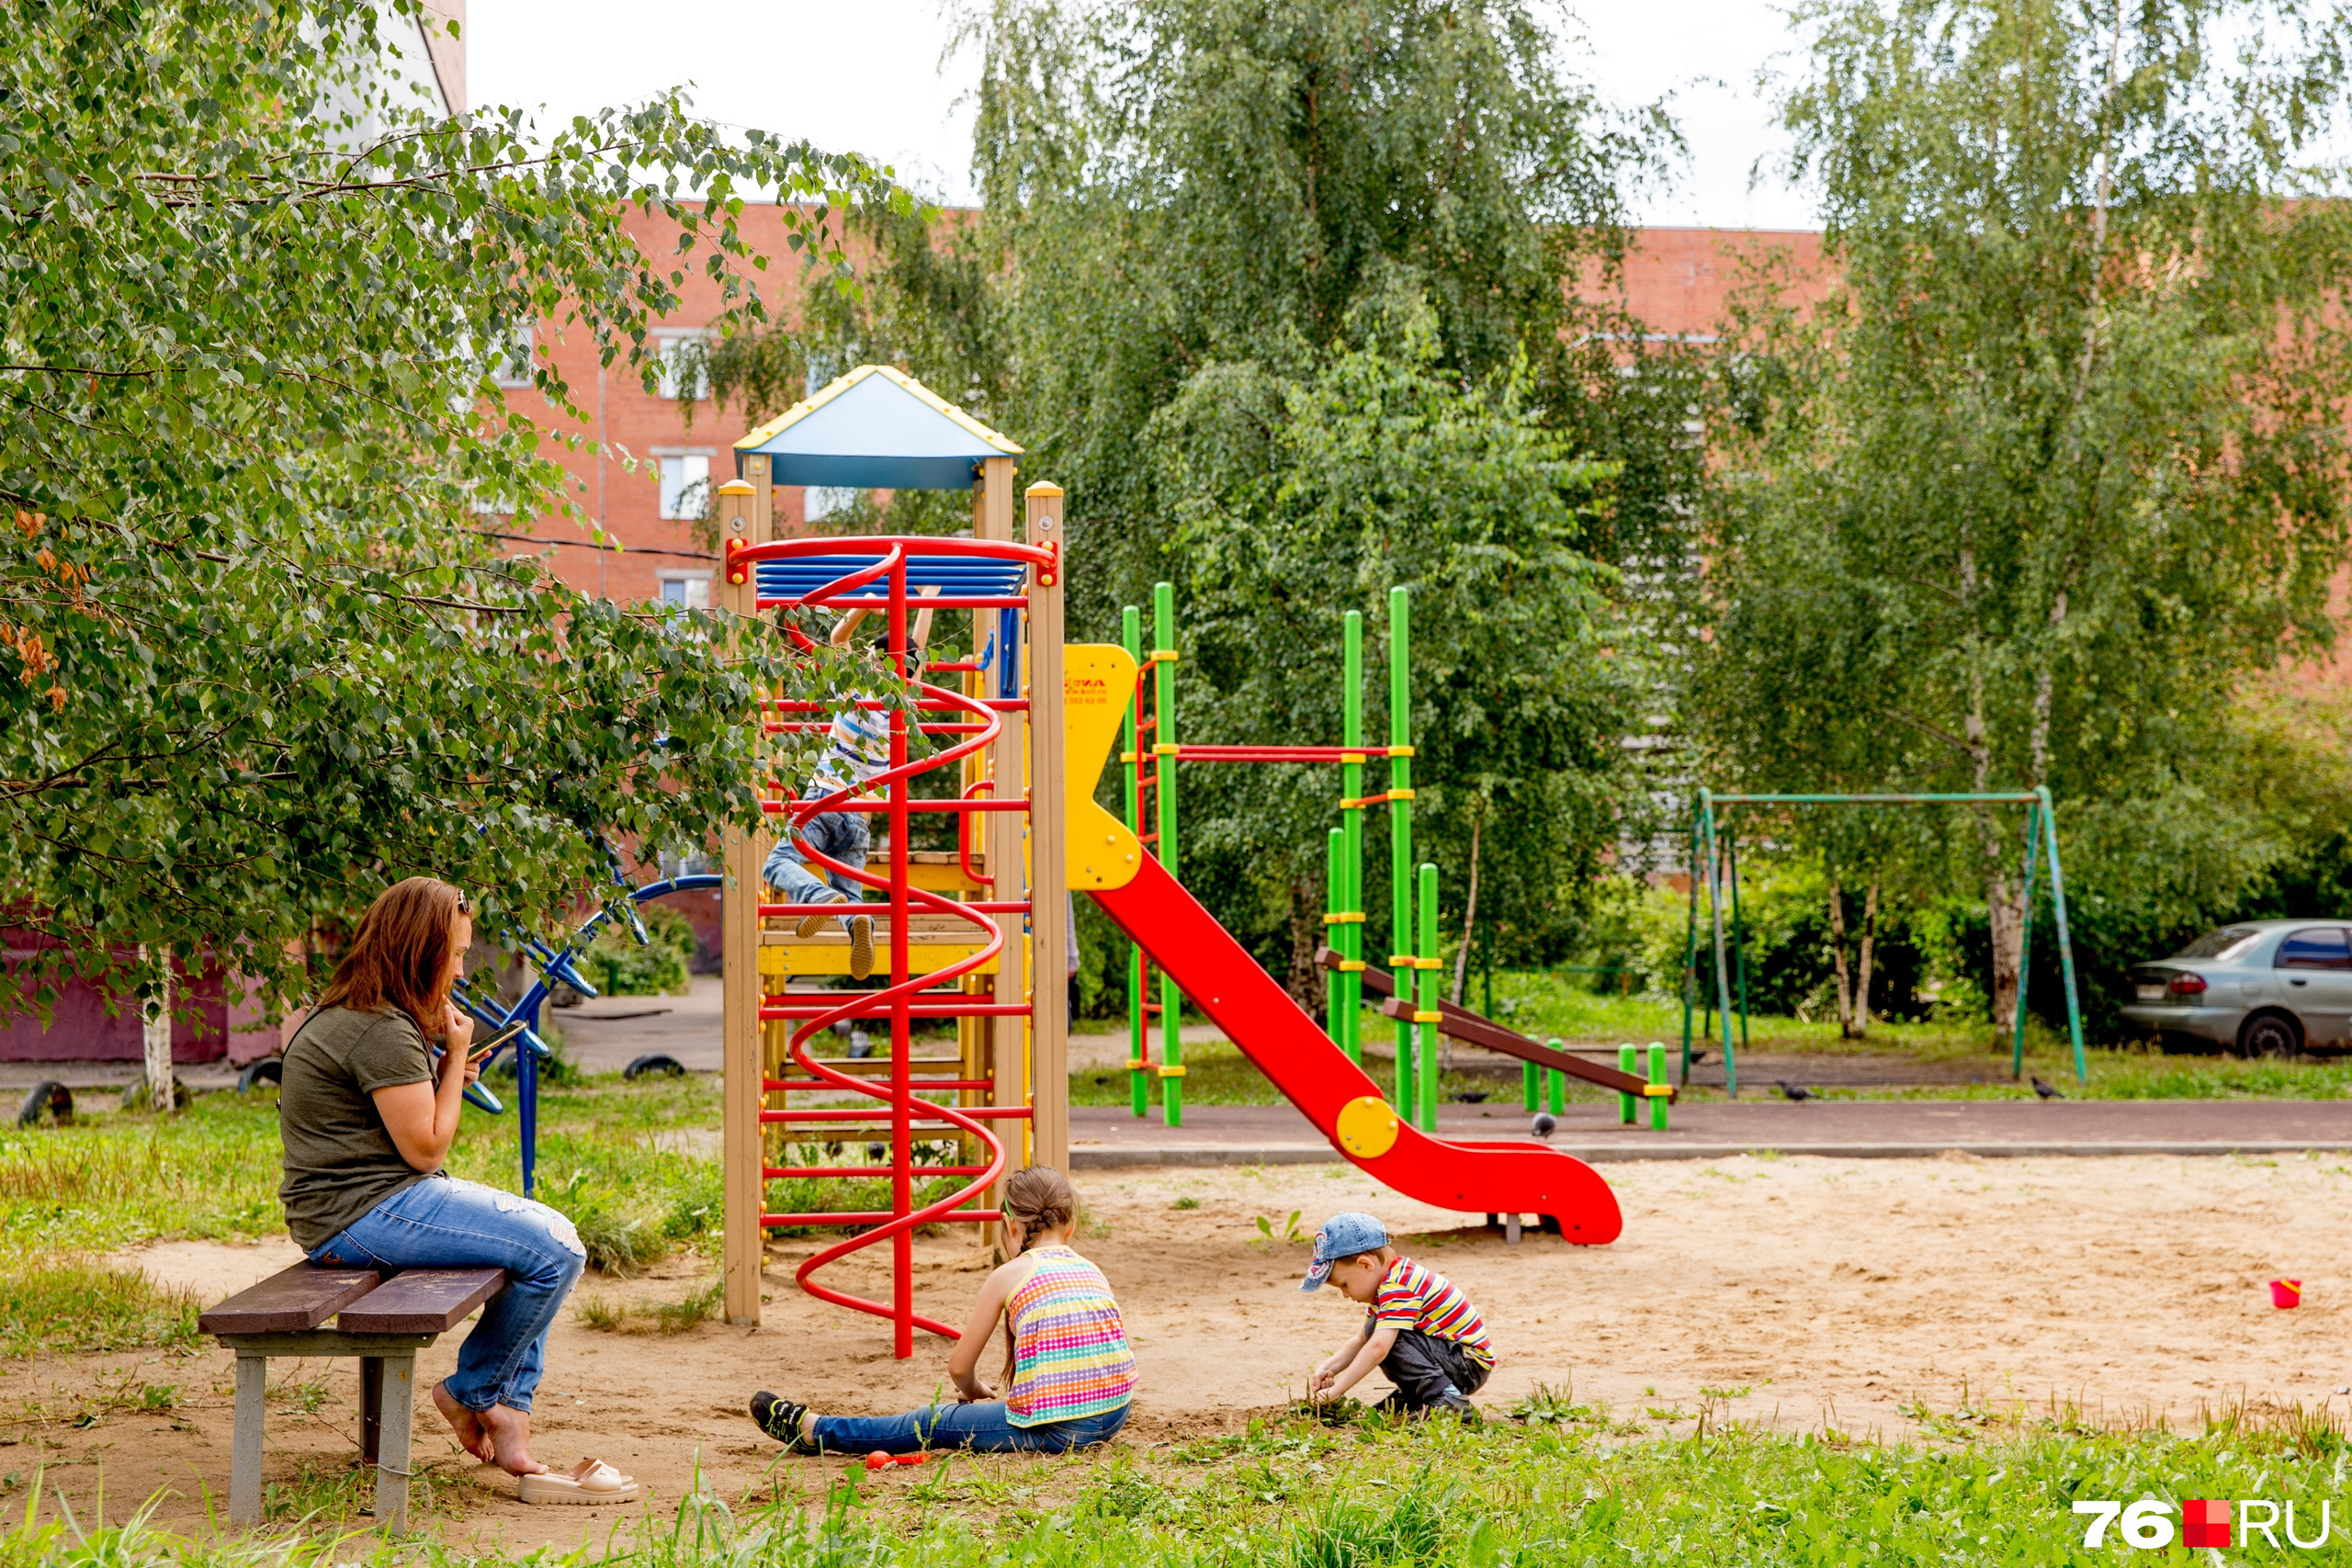 Ярославские чиновники сравнили плату за детские площадки с пирожками 23 мая  2019 г - 23 мая 2019 - 76.ru